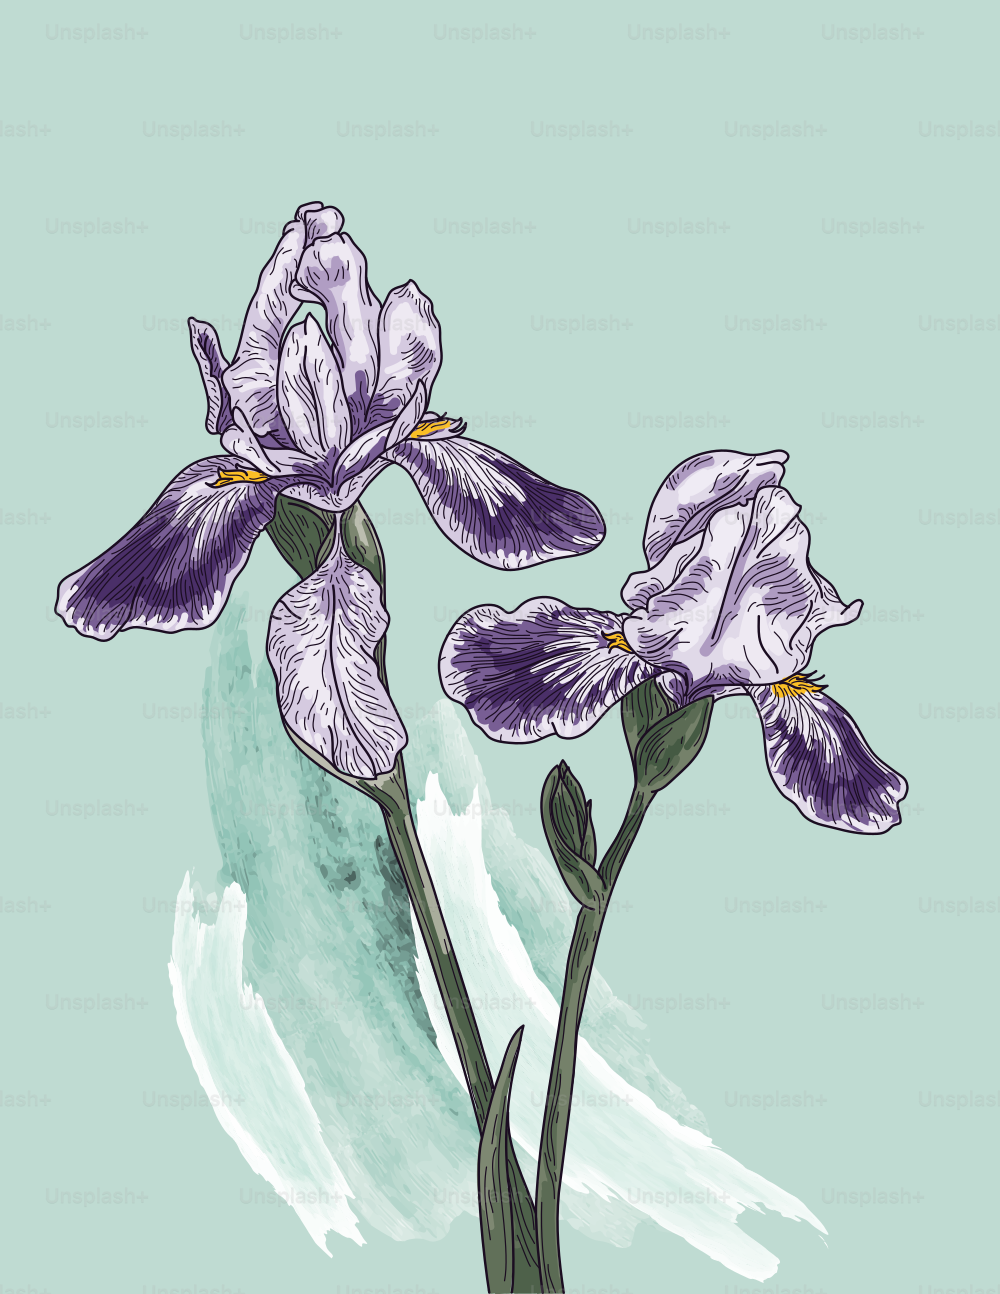 Ilustración lineal elegante y detallada de flores de iris sobre un fondo de pincel de acuarela simple.